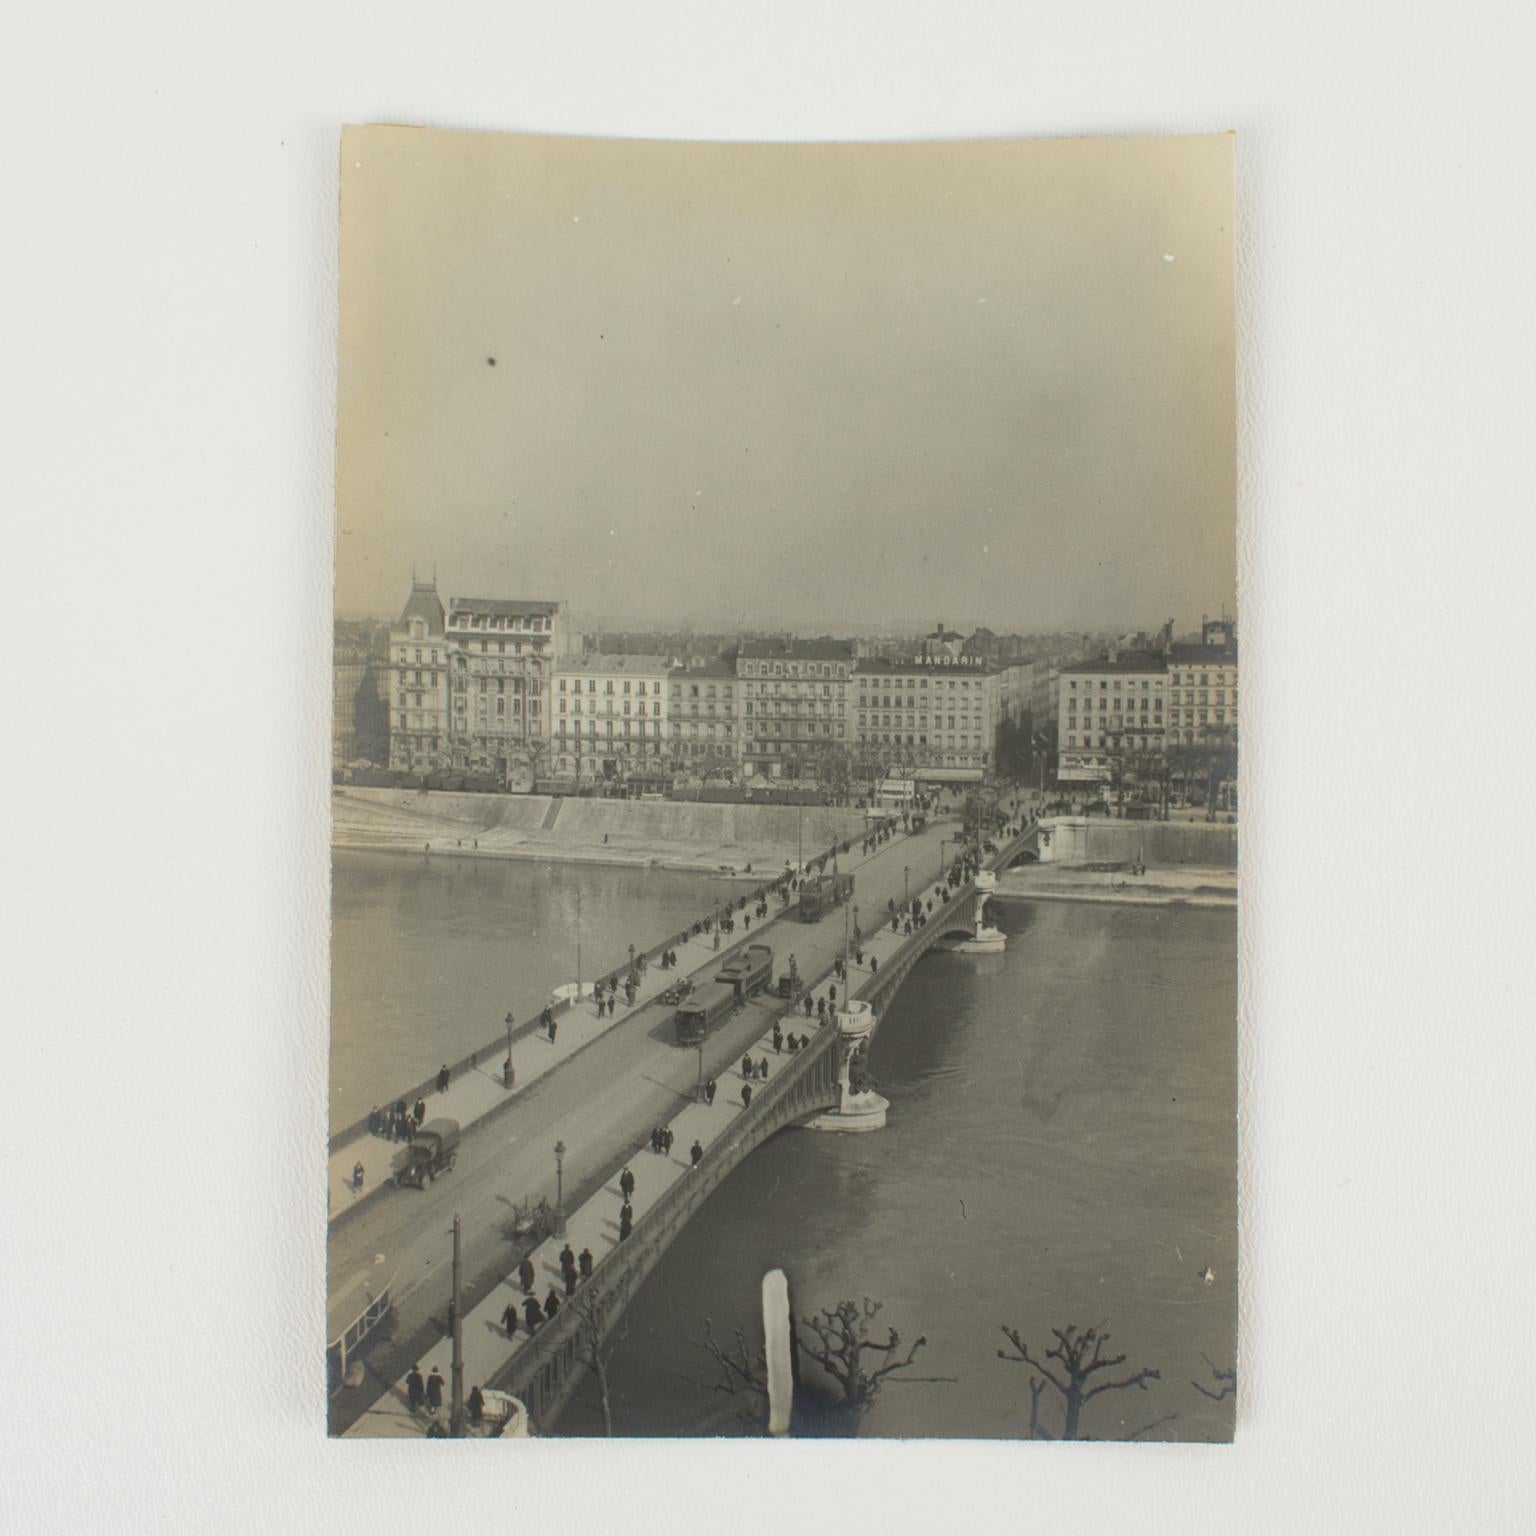 Blick auf eine Brücke in Lyon, Frankreich 1927 Silber-Gelatine-Schwarz-Weiß-Fotografie (Art déco), Photograph, von Unknown